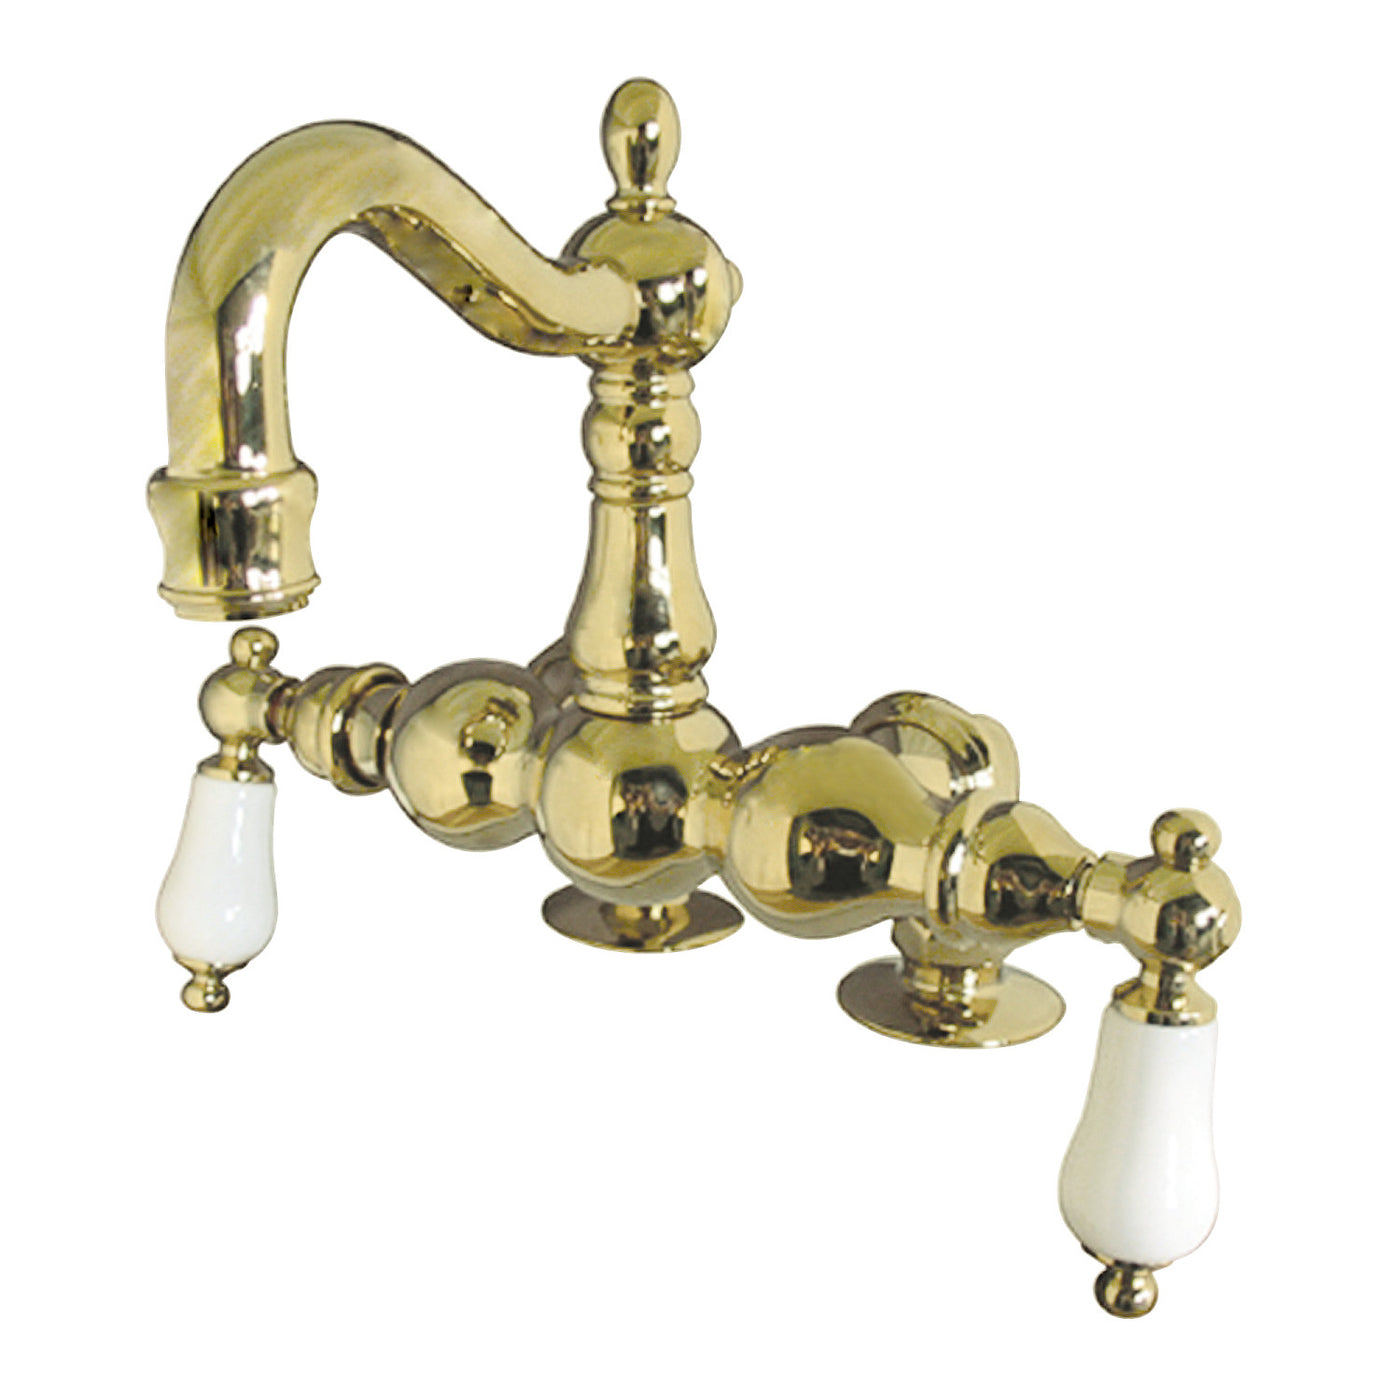 Elements of Design DT10912PL 3-3/8-Inch Deck Mount Tub Faucet, Polished Brass